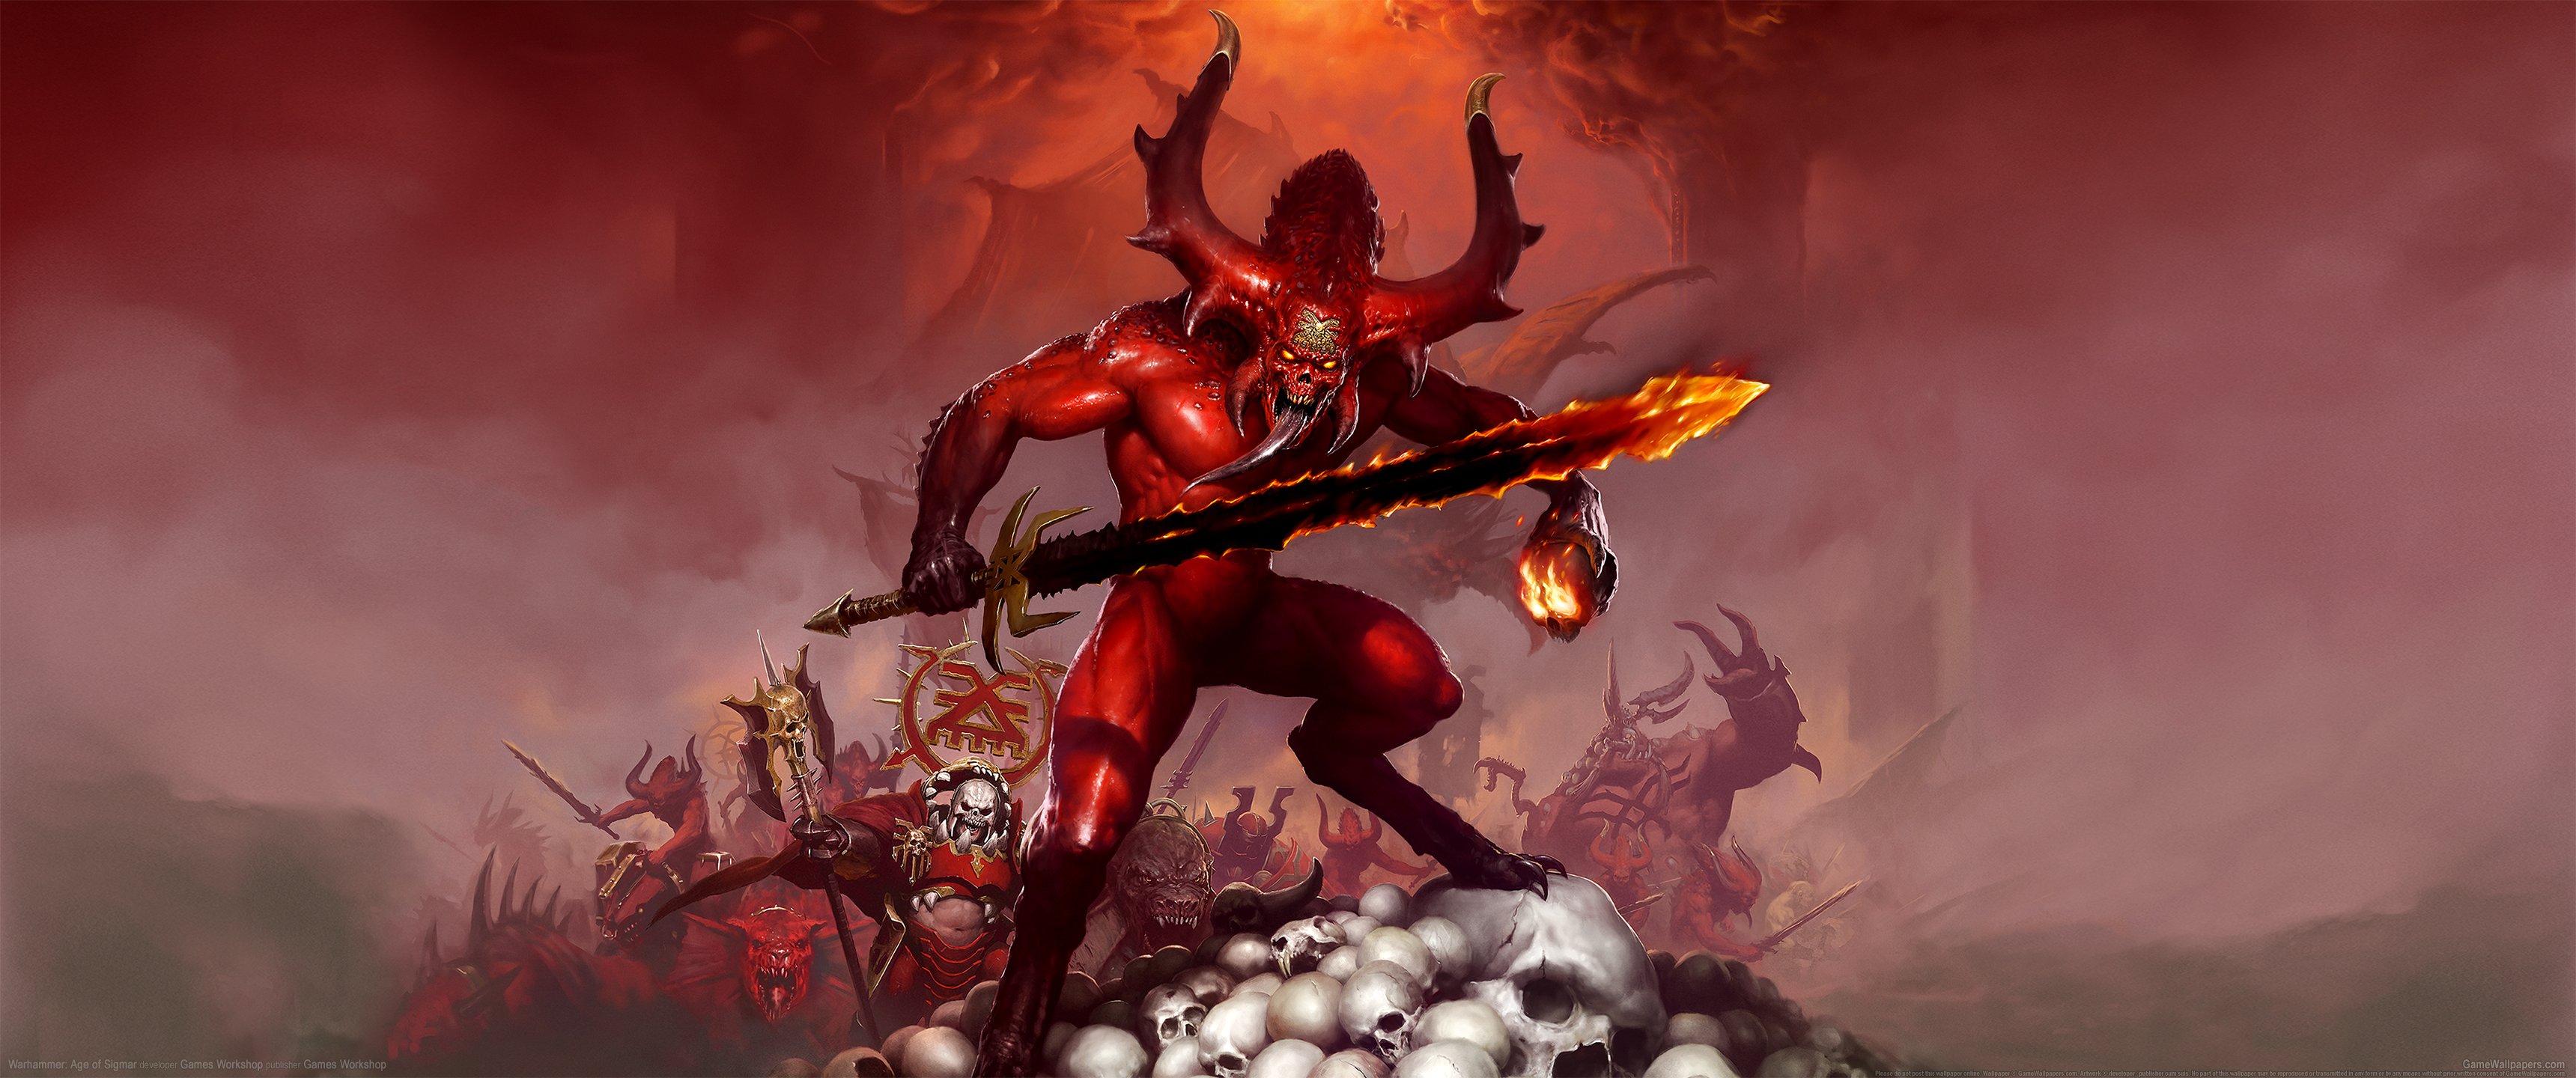 Warhammer: Age of Sigmar 3440x1440 achtergrond 02